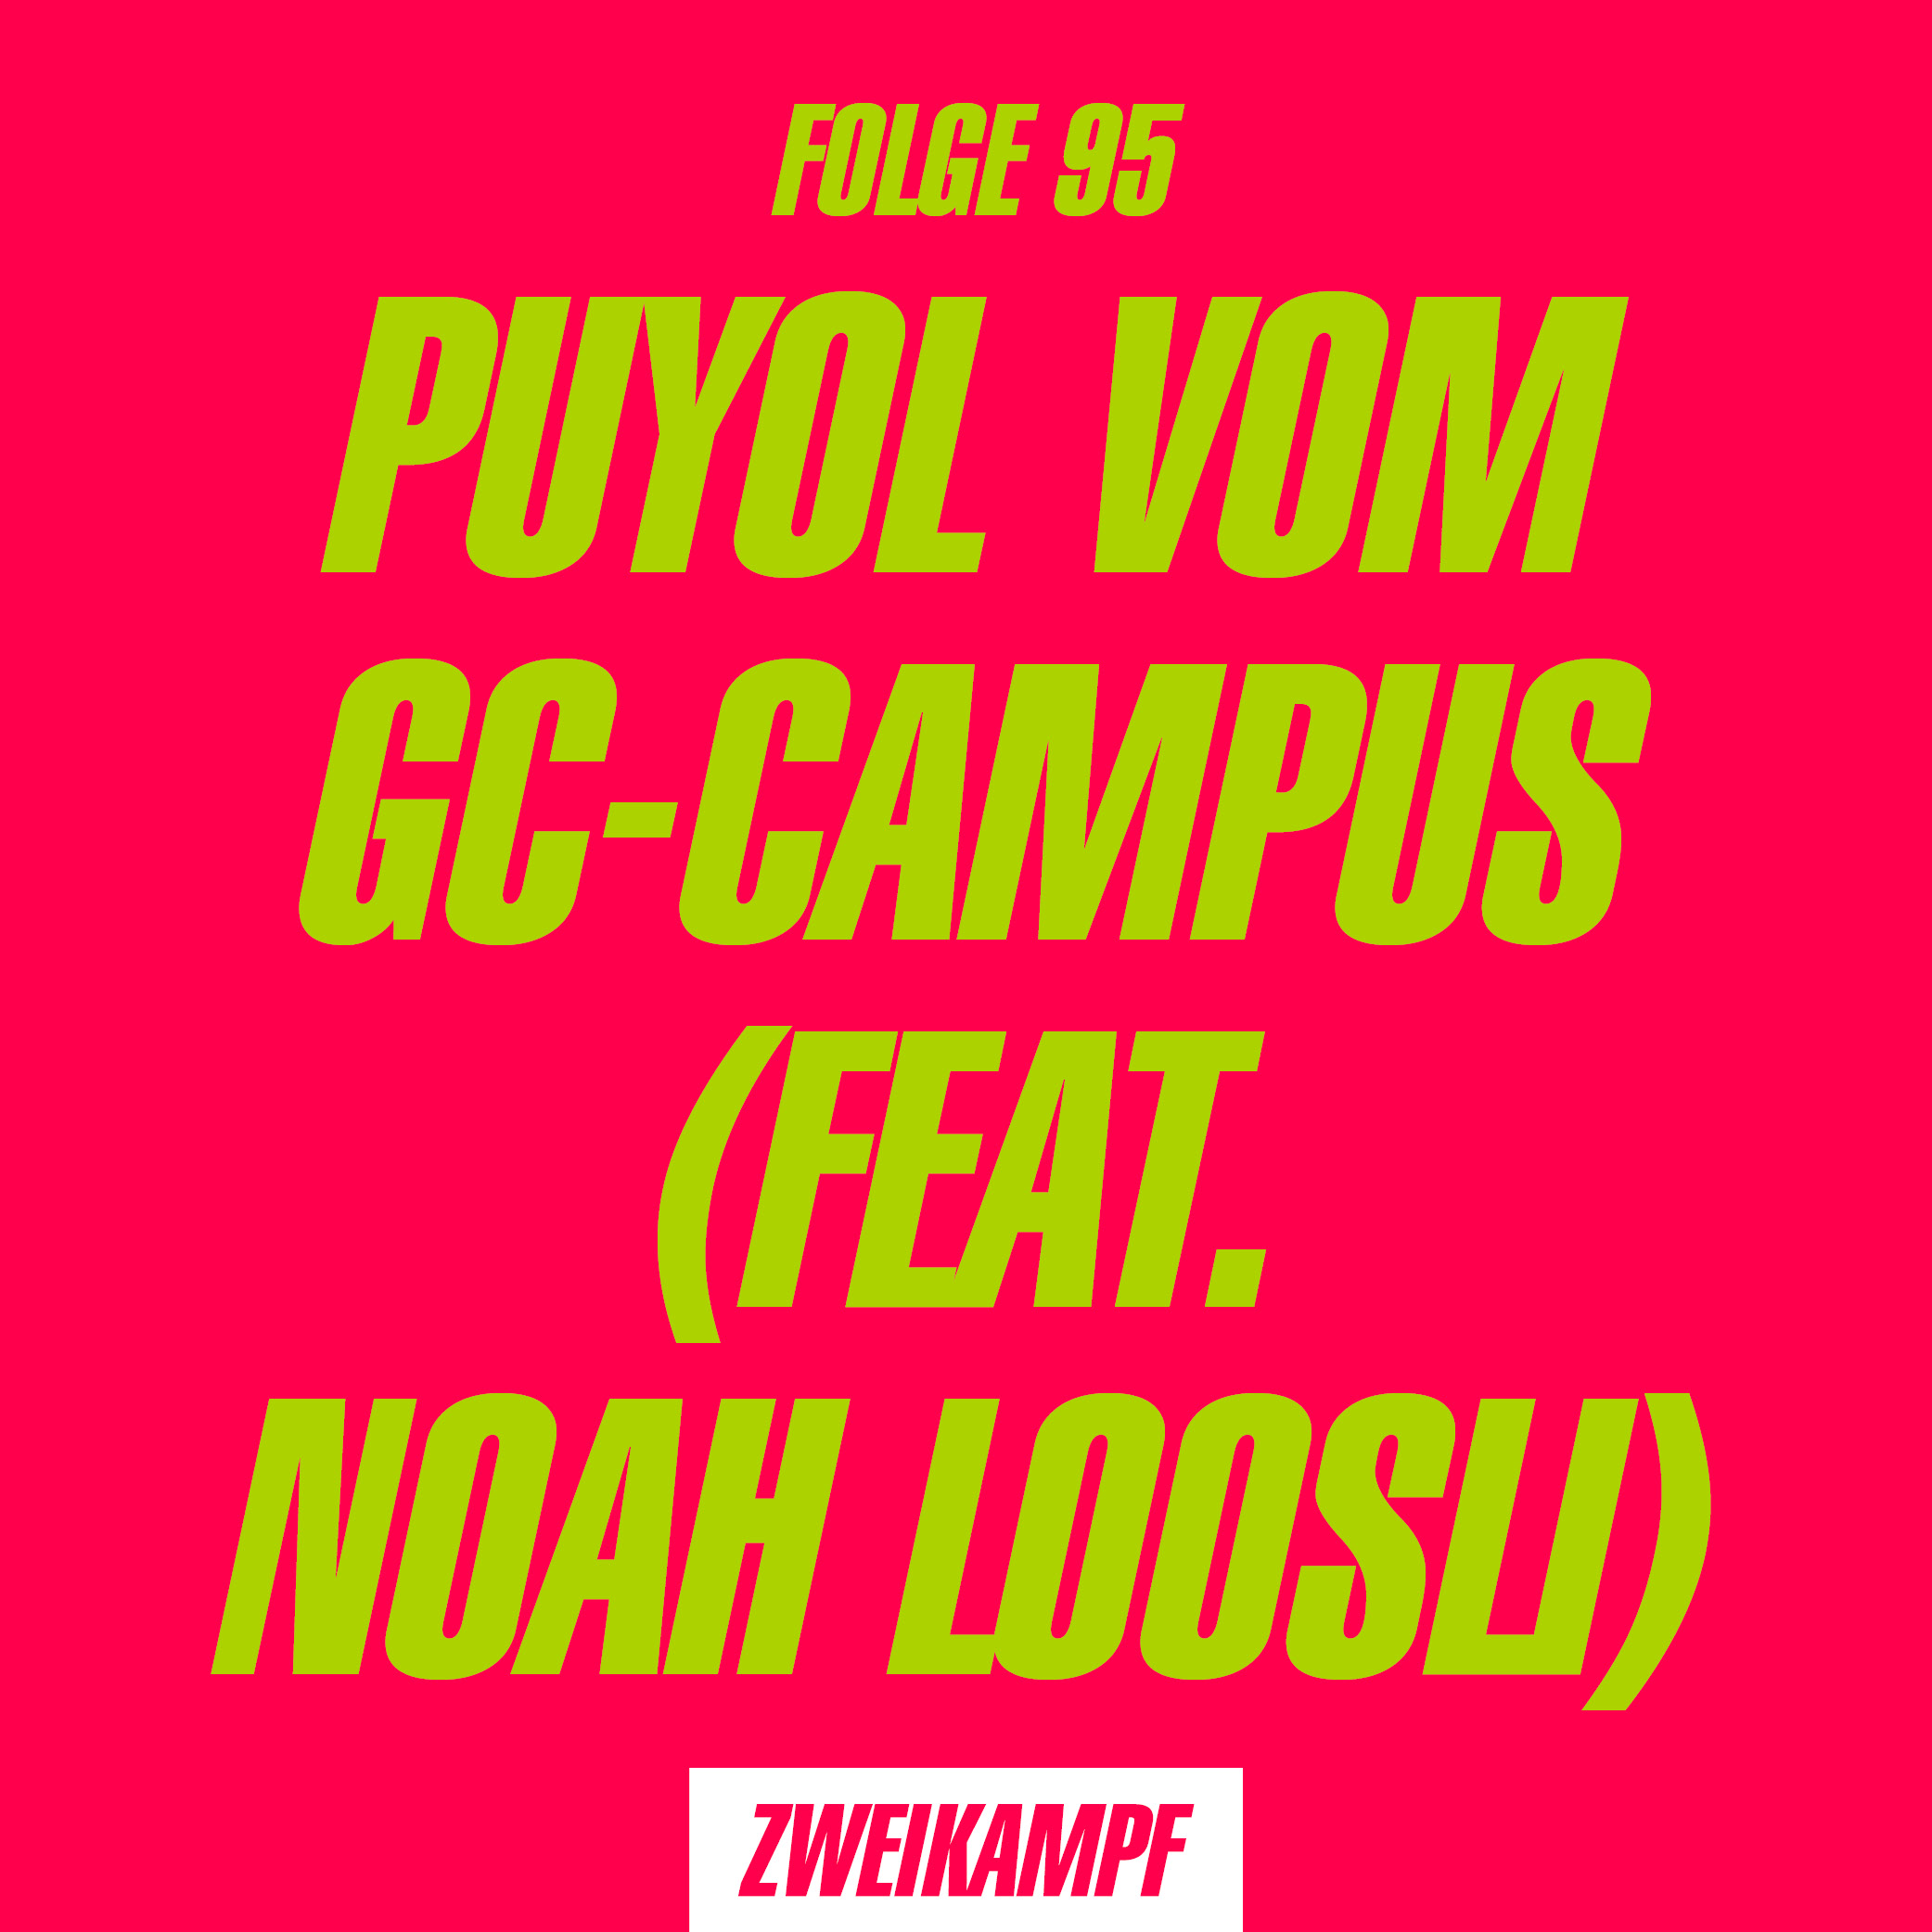 Folge 95: Puyol vom GC-Campus (feat. Noah Loosli)